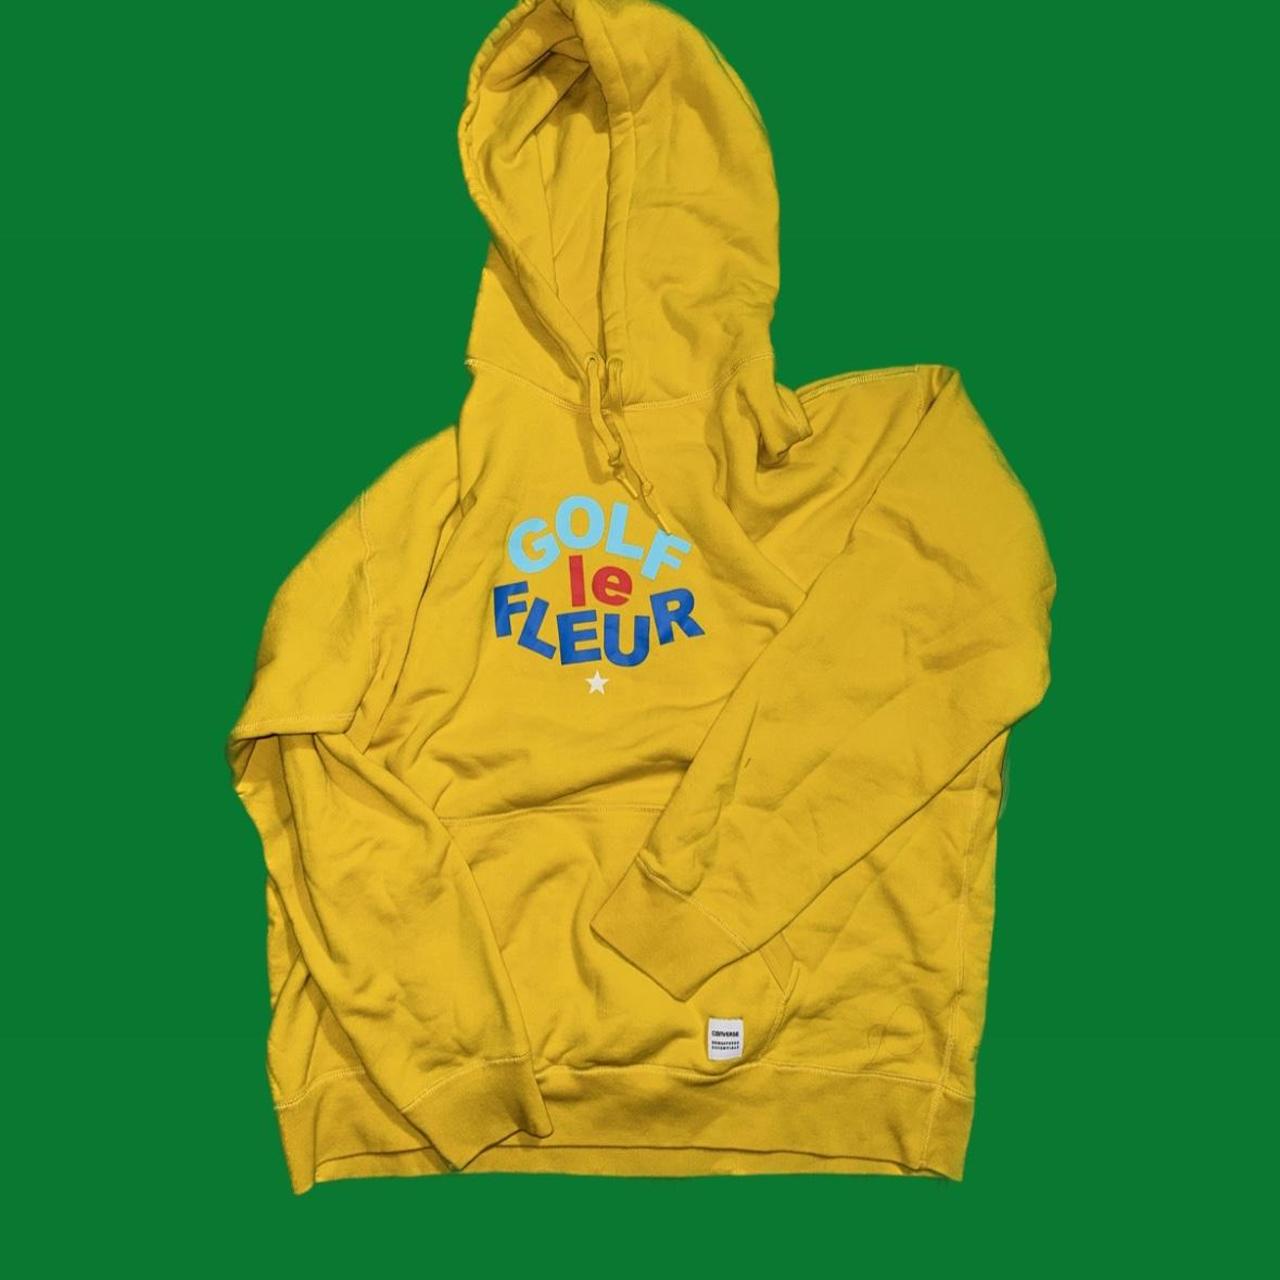 golf fleur converse hoodie xxl yellow... - Depop